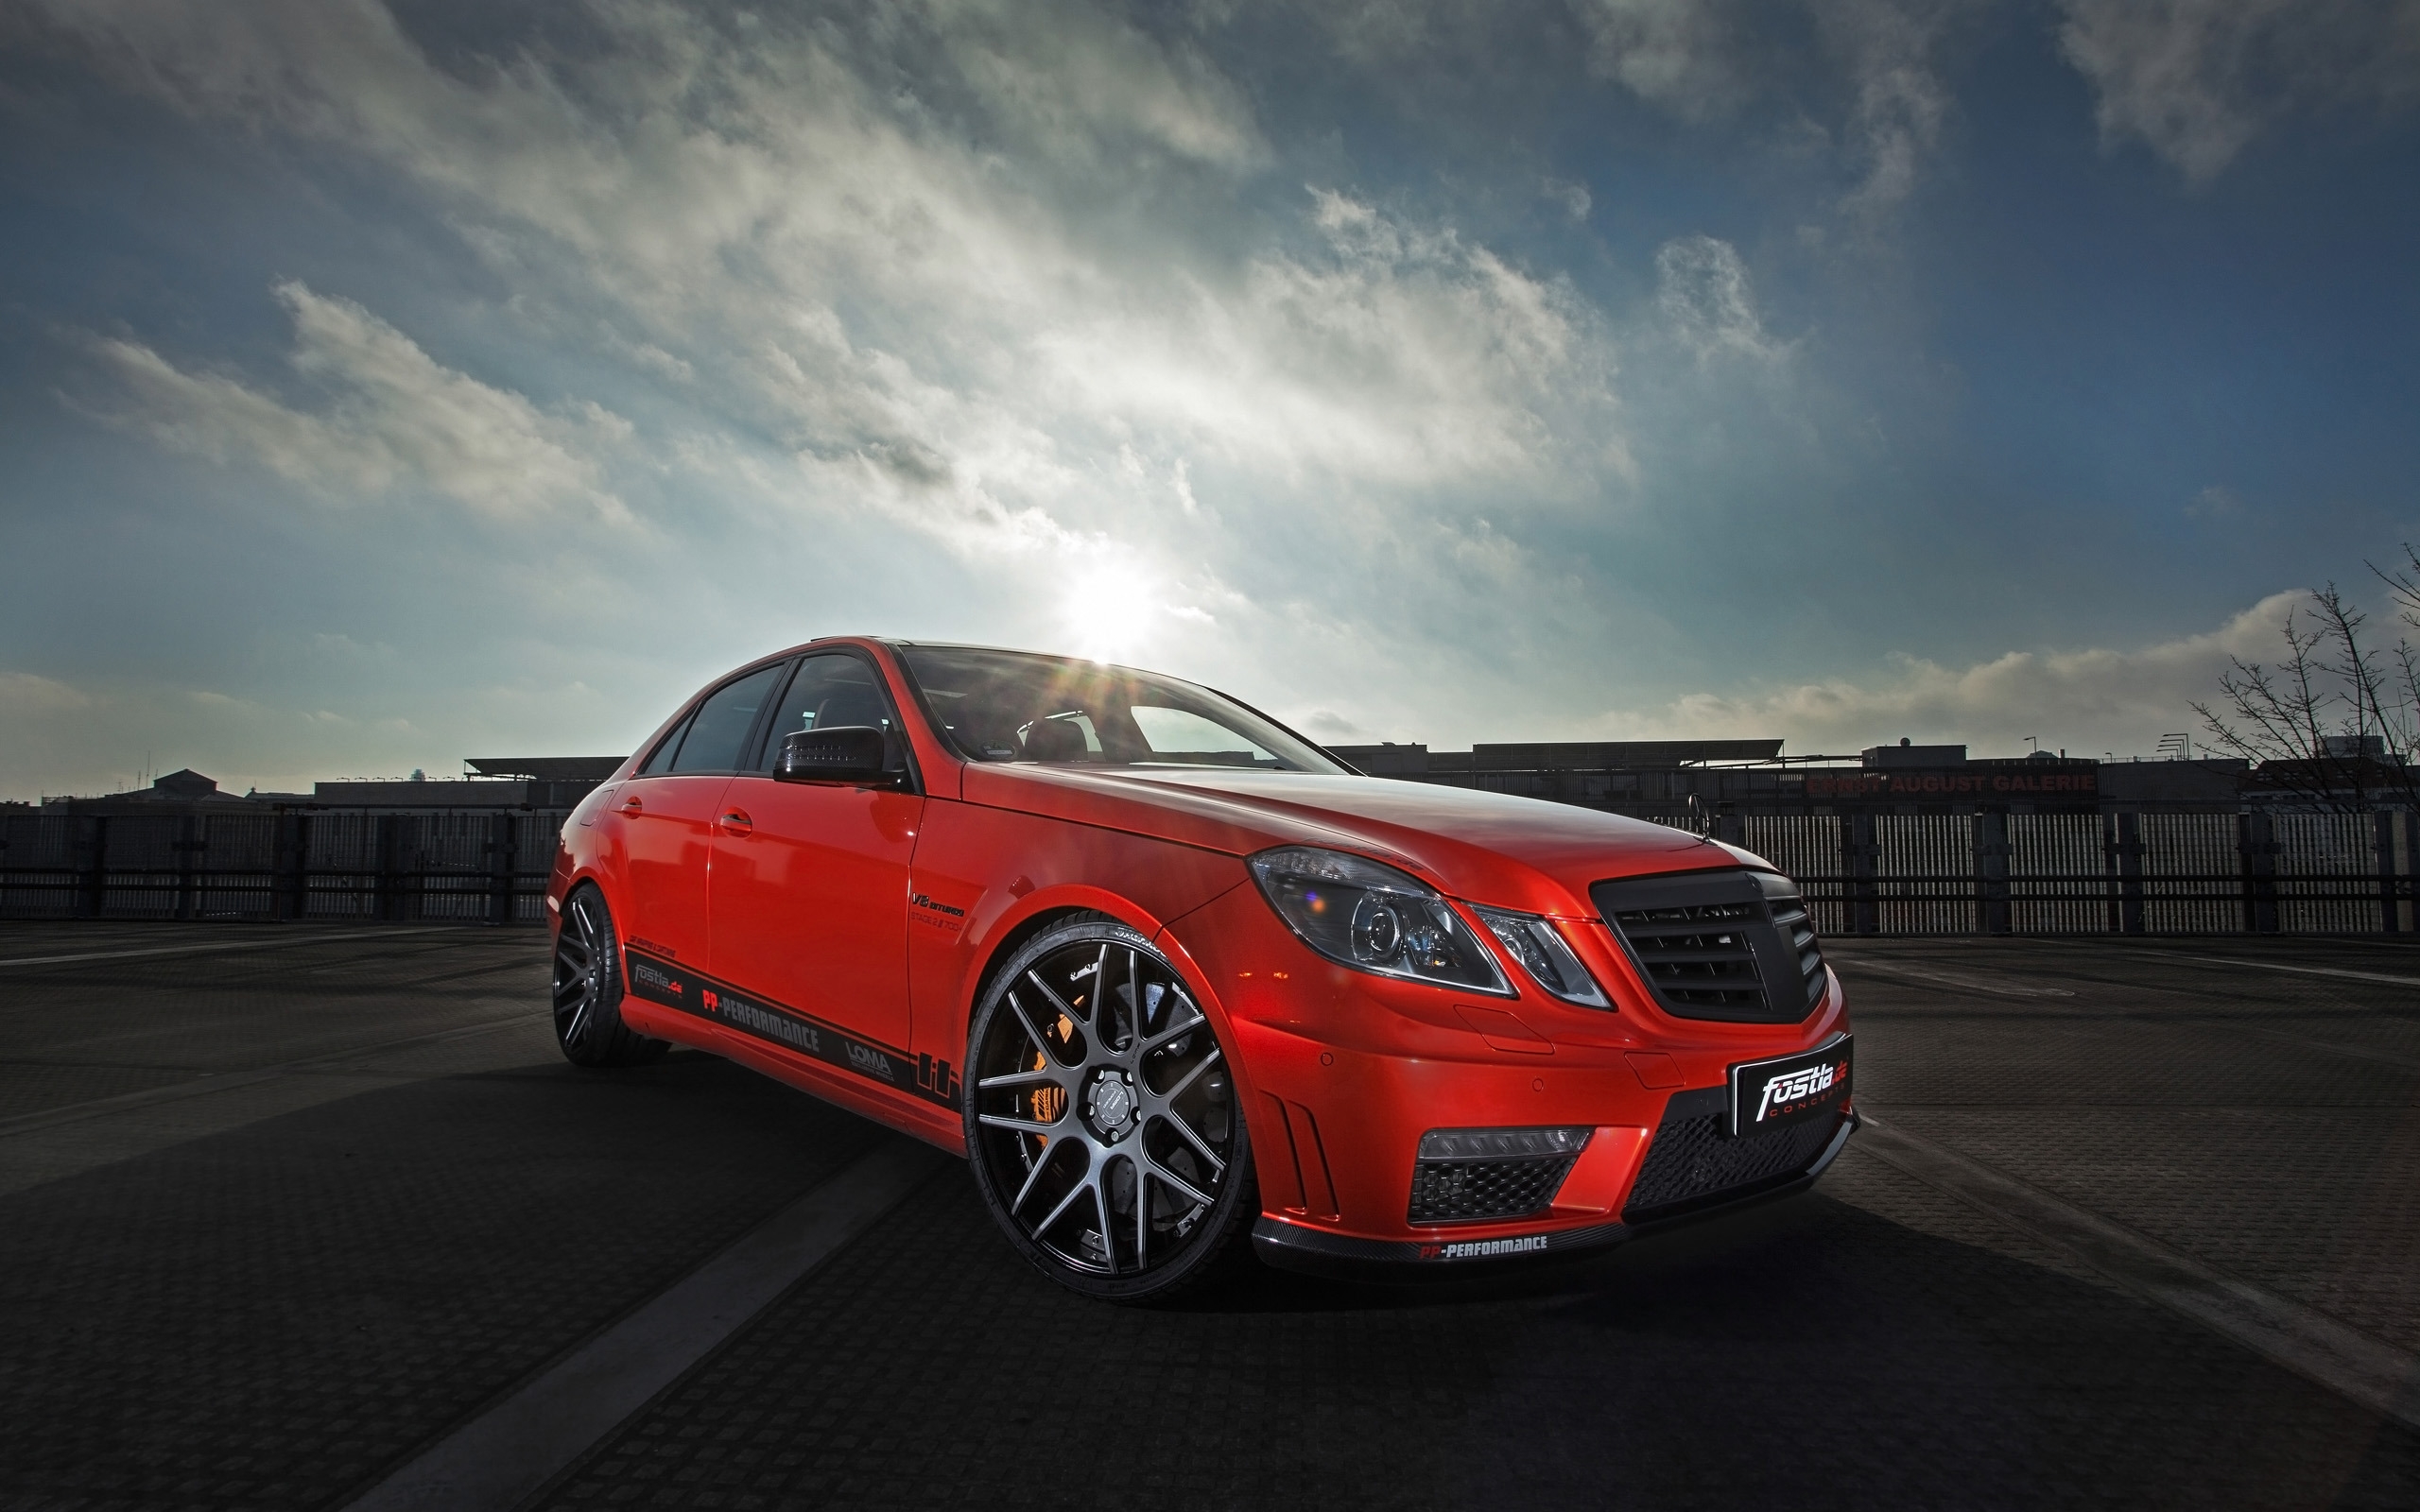 Fostla Mercedes-Benz E63 AMG for 2560 x 1600 widescreen resolution